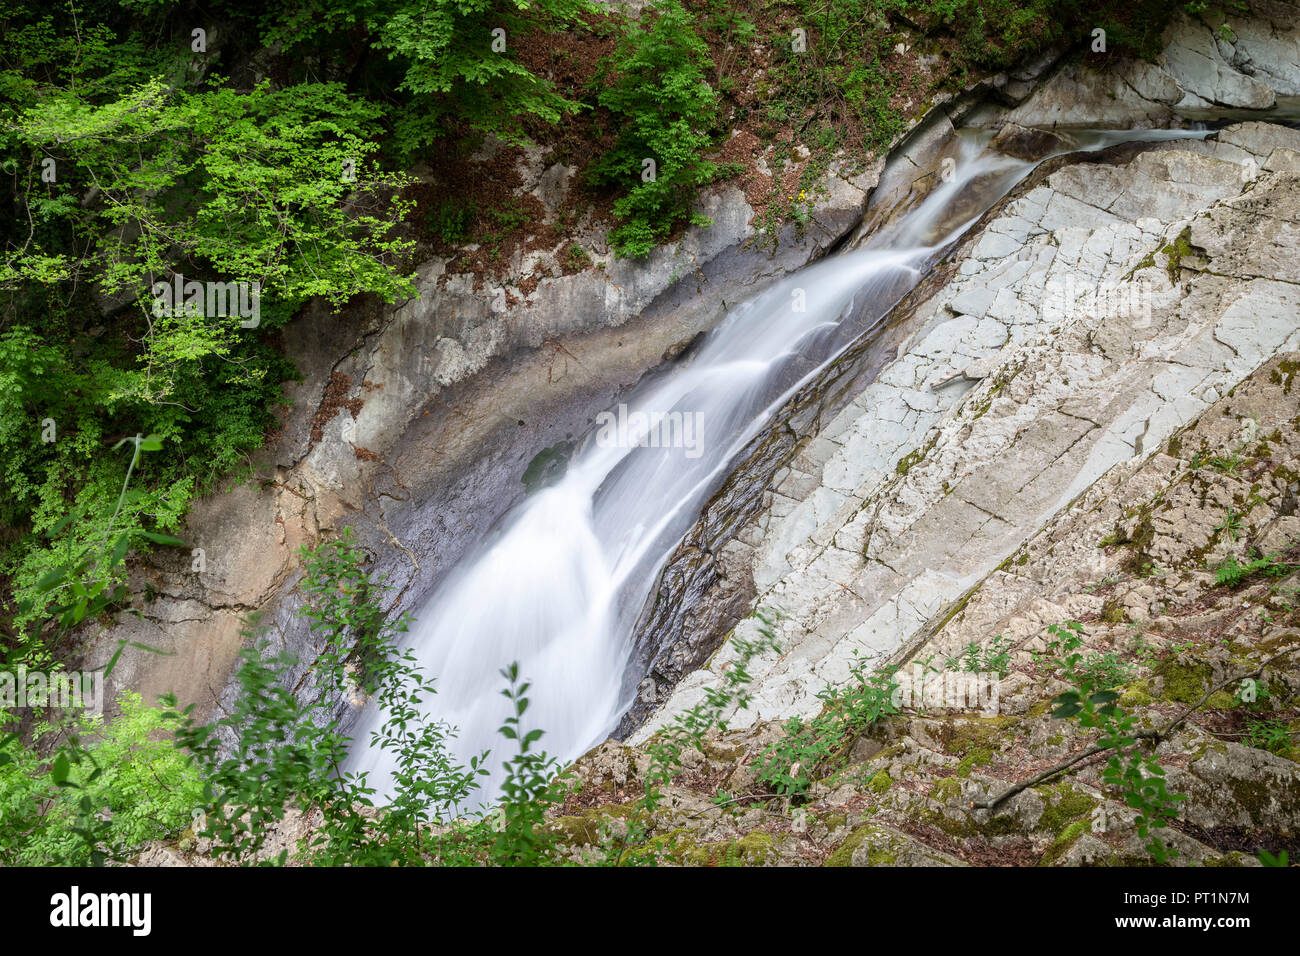 Waterfalls of the river Breggia at Breggia gorges, Muggio Valley, Mendrisio District, Canton Ticino, Switzerland, Stock Photo